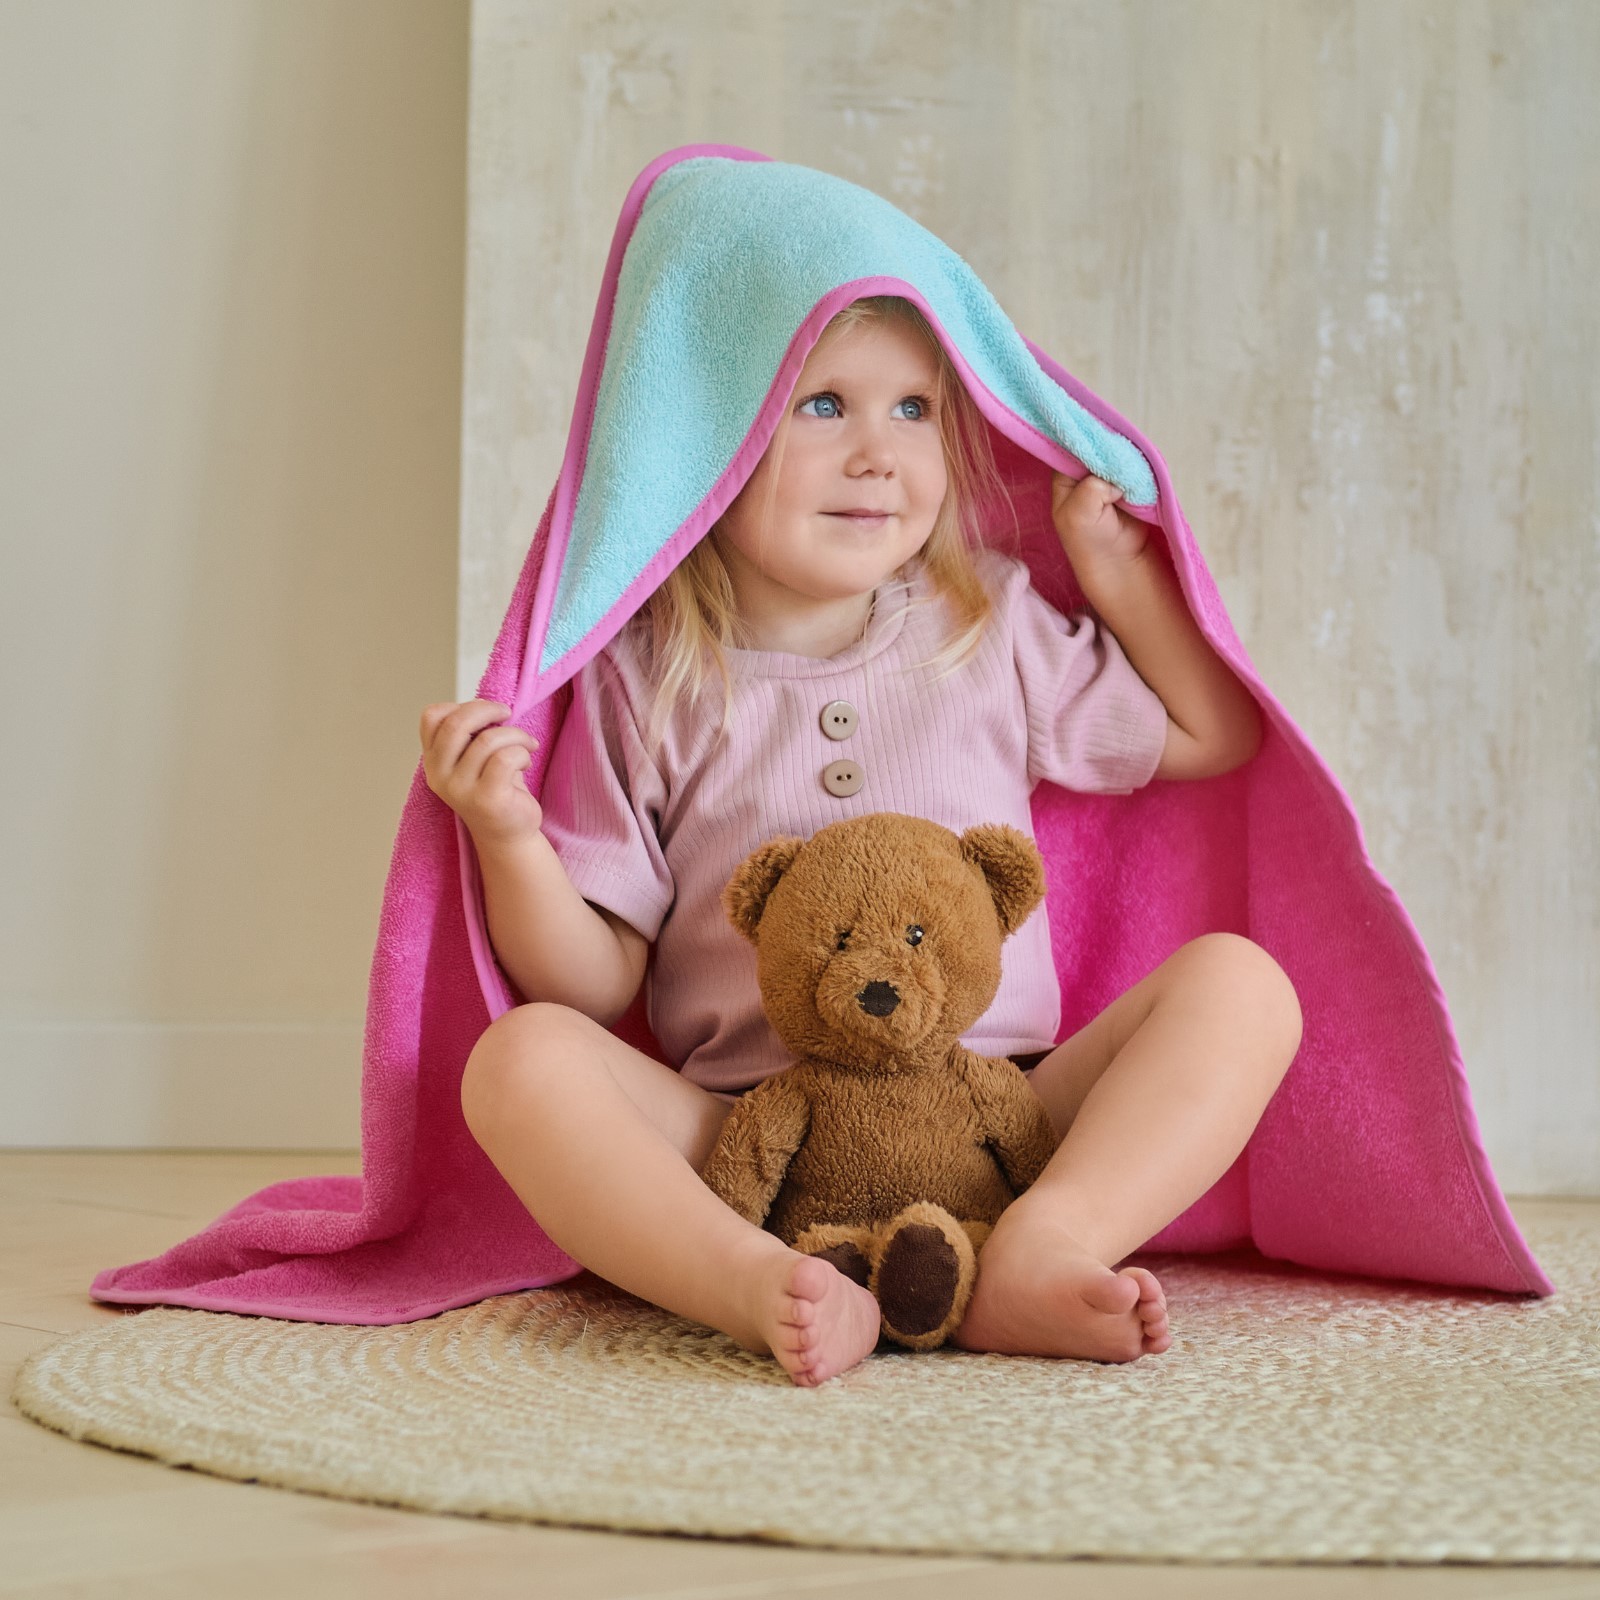 Детское полотенце Katrin цвет: мятный, розовый (75х75 см), размер 75х75 см ros910603 Детское полотенце Katrin цвет: мятный, розовый (75х75 см) - фото 1